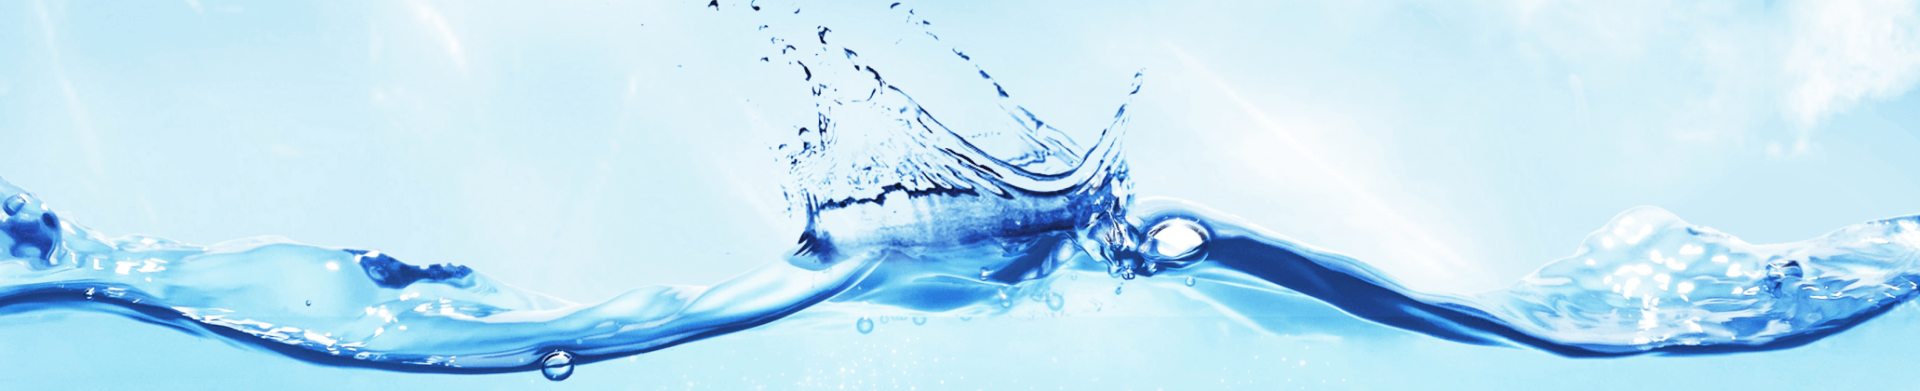 Wasseranalytik - Quick Facts